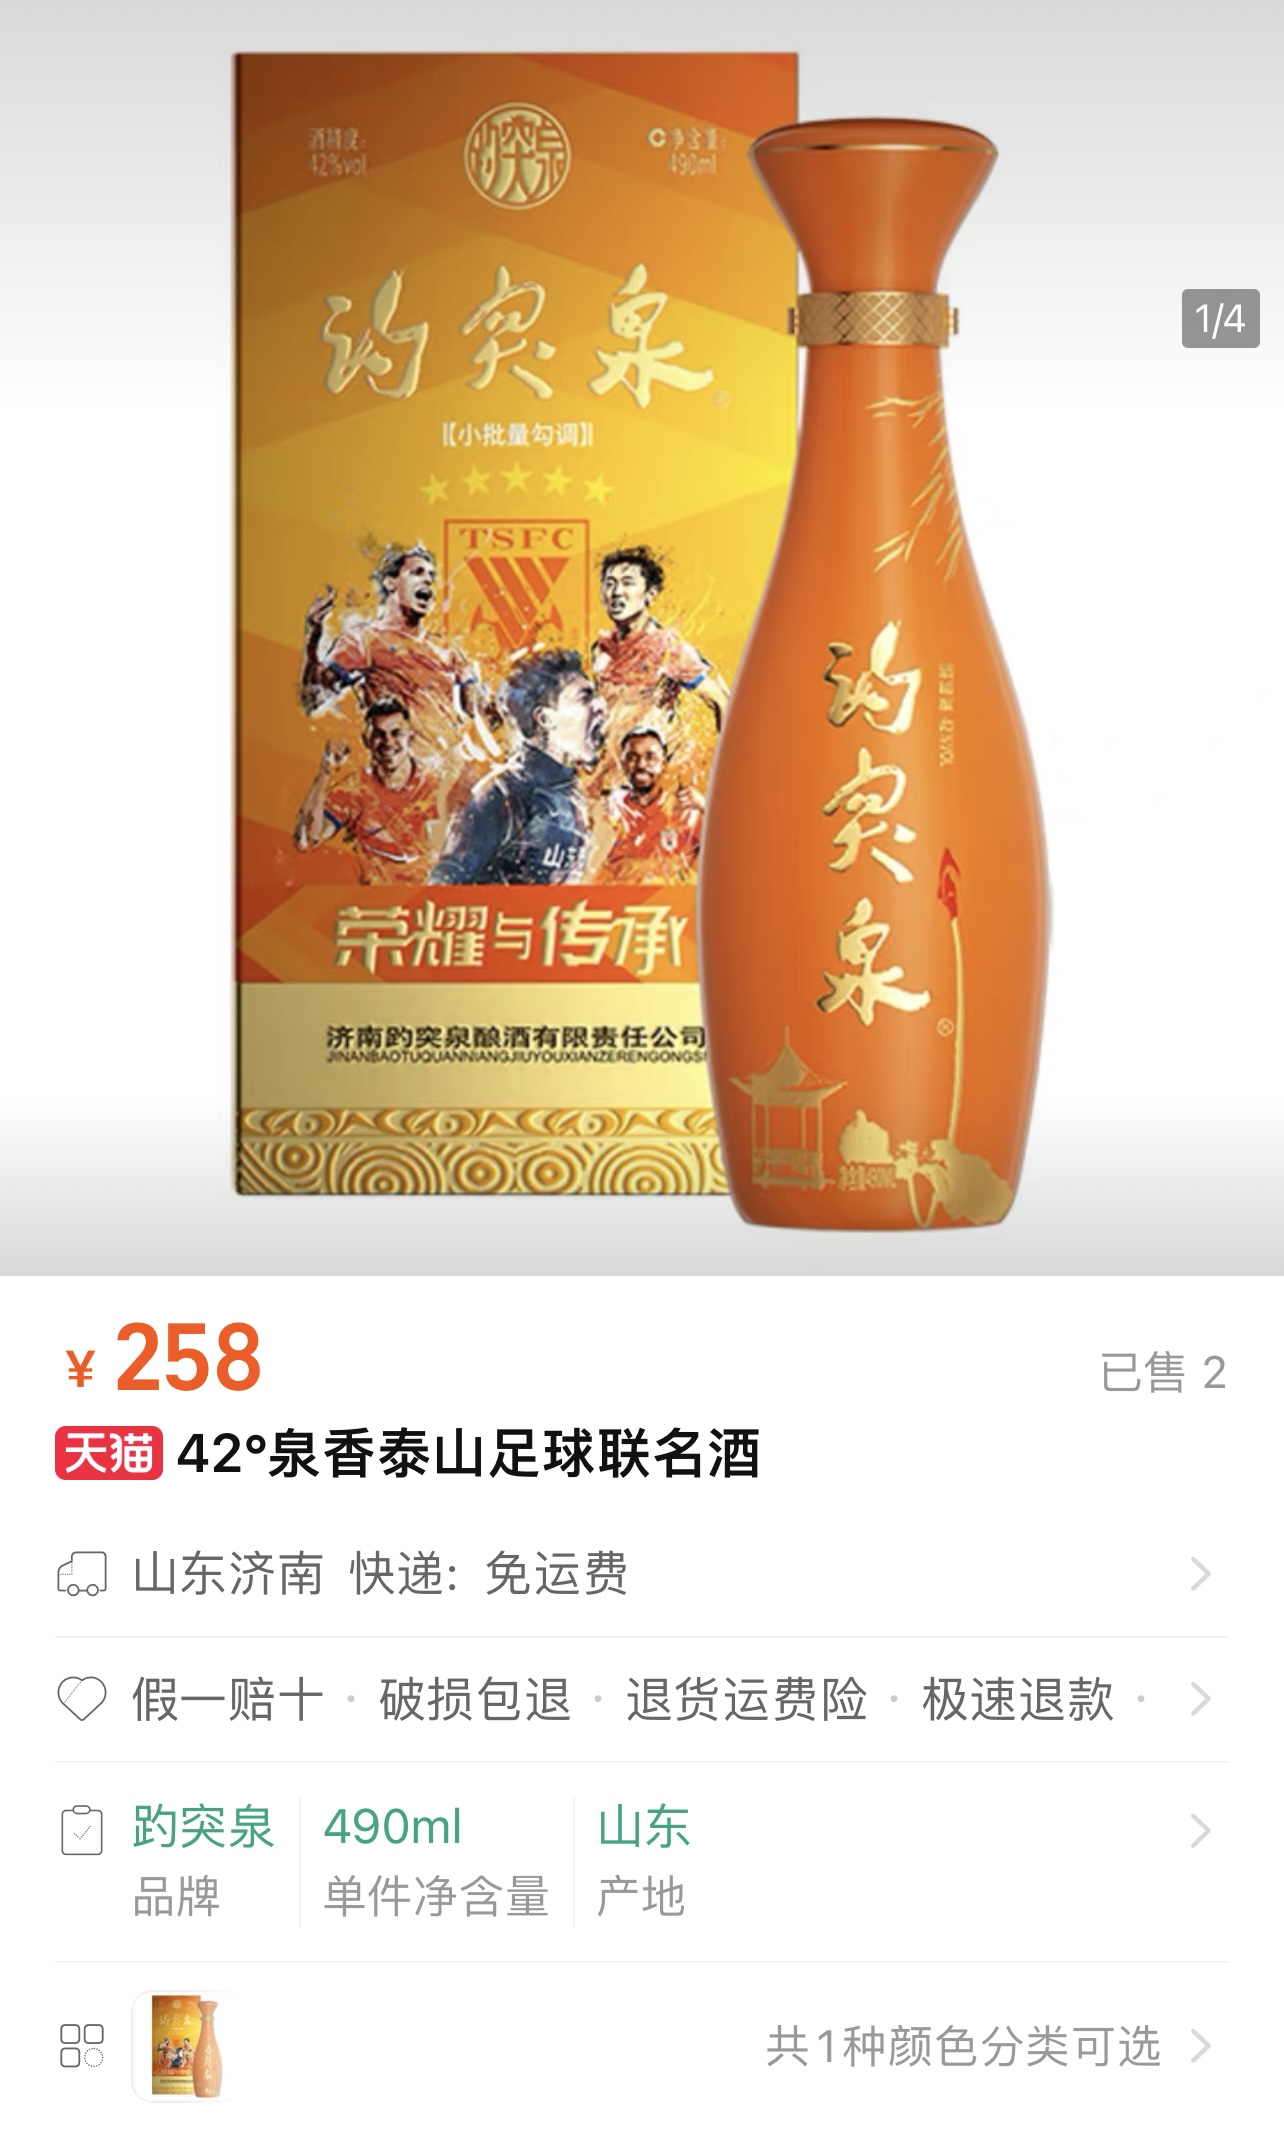 258元/瓶泰山足球-趵突泉“ 42°泉香泰山足球联名酒”上市